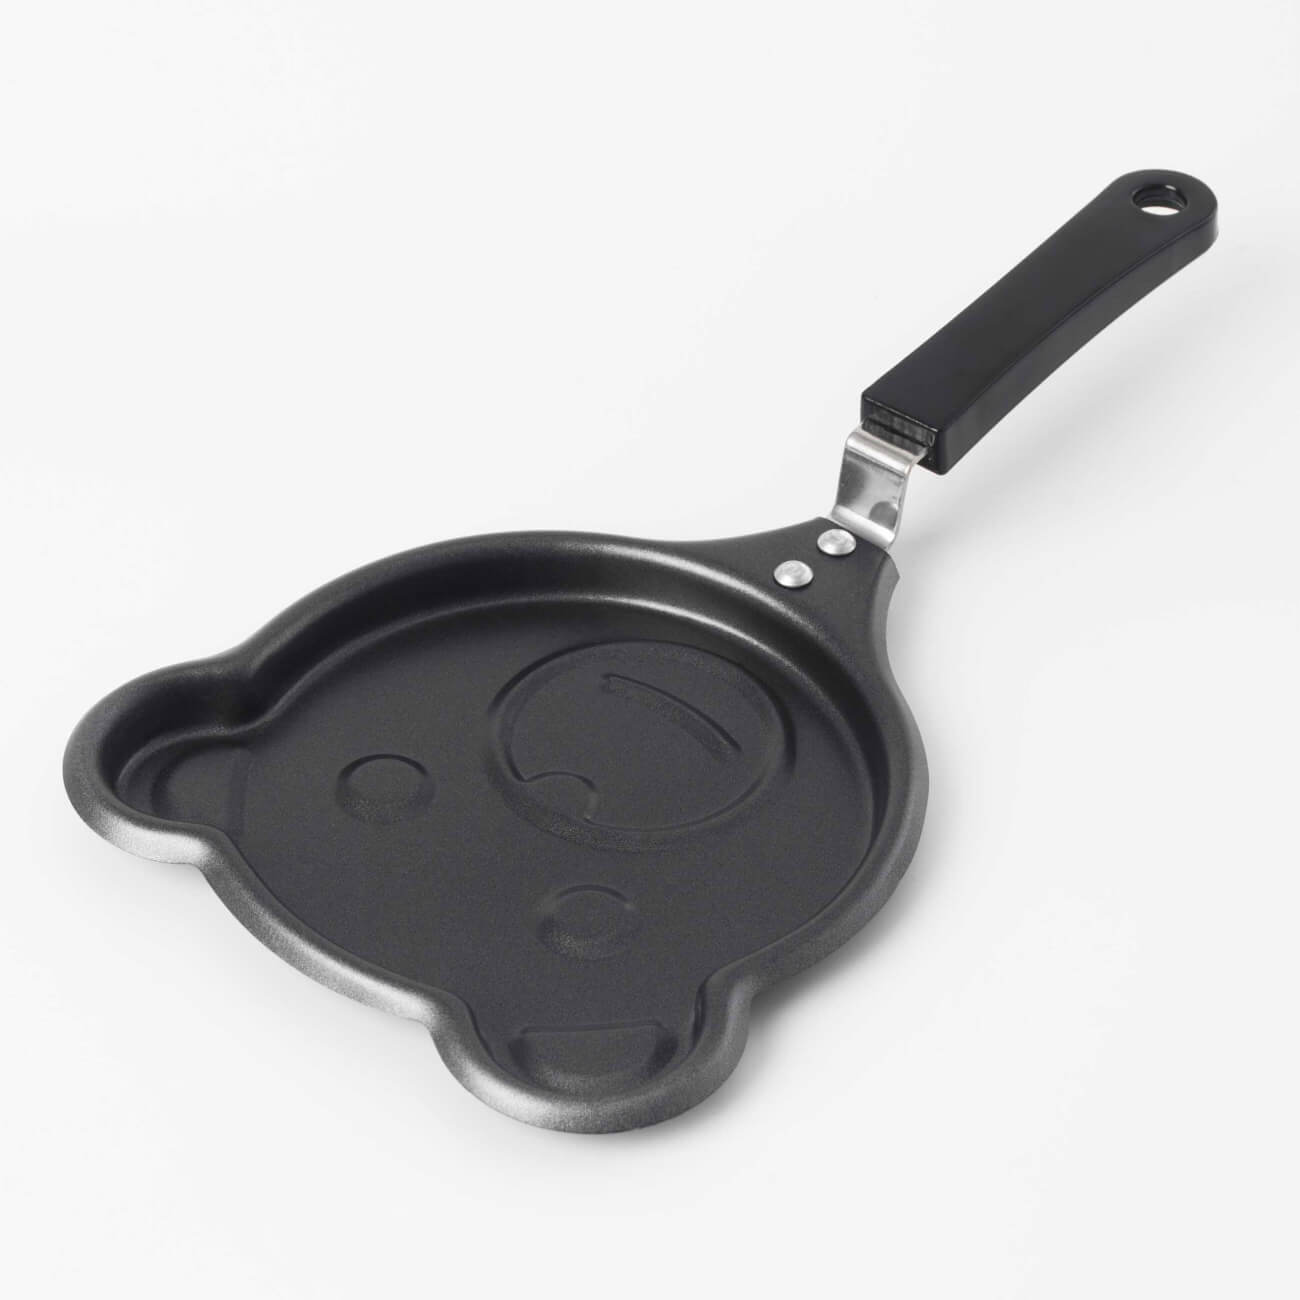 Сковорода для омлета и панкейков, 13 см, с покрытием, сталь, черная, Мишка, Bear изображение № 1